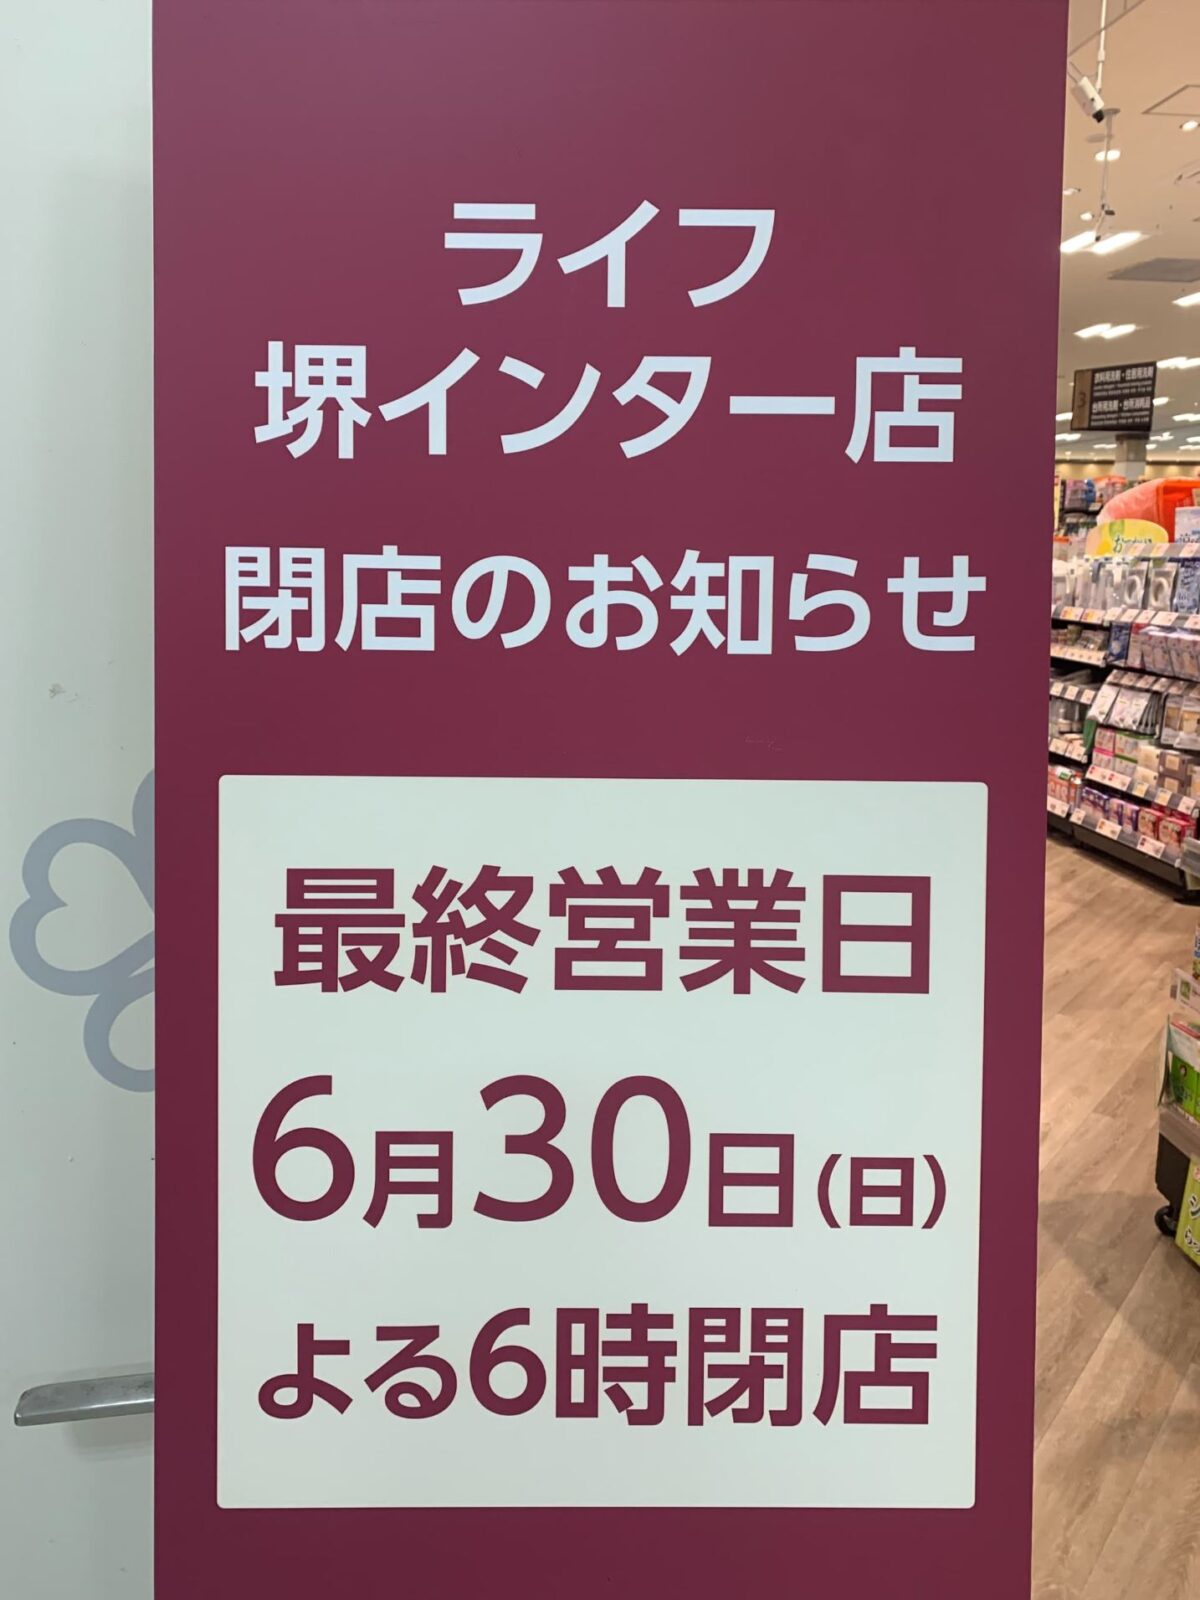 【閉店】堺市・西区にあるベスピア堺インター店内の『ライフ』が閉店するそうです：